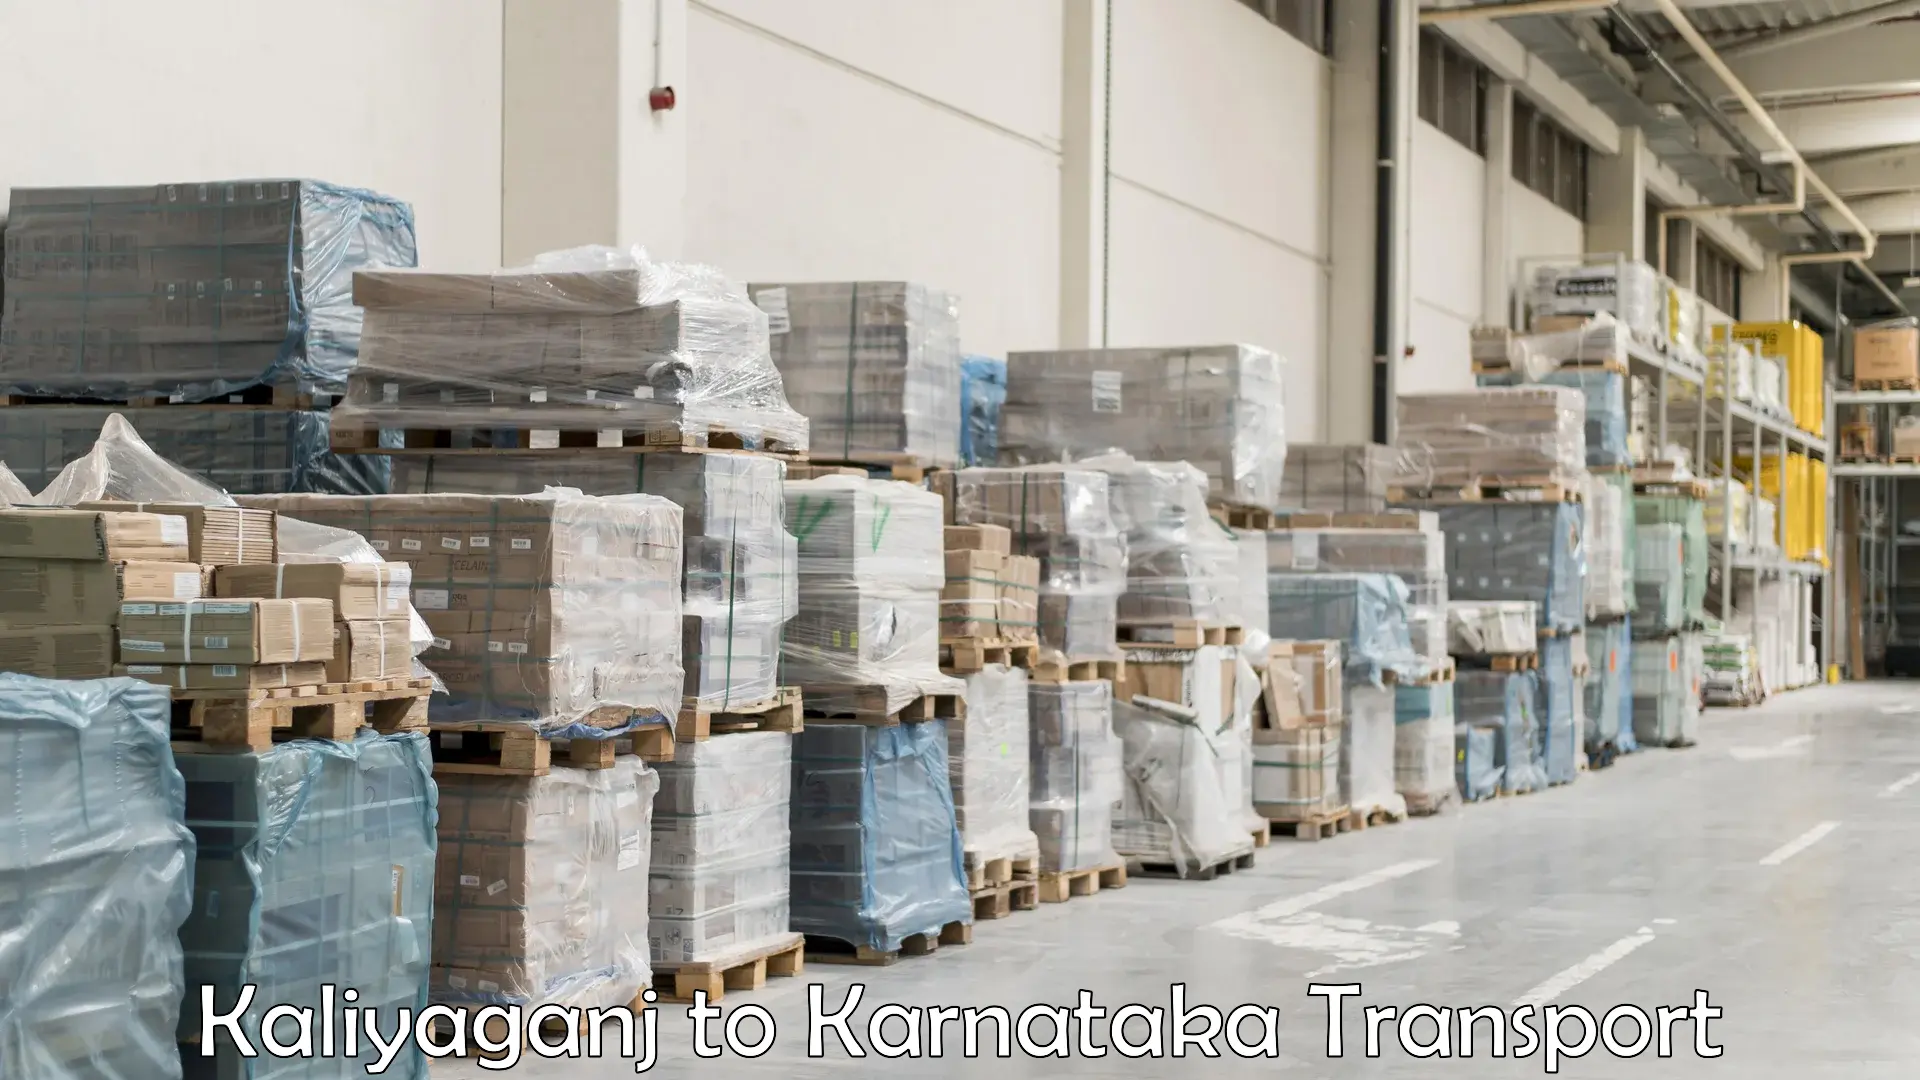 Part load transport service in India Kaliyaganj to Karnataka